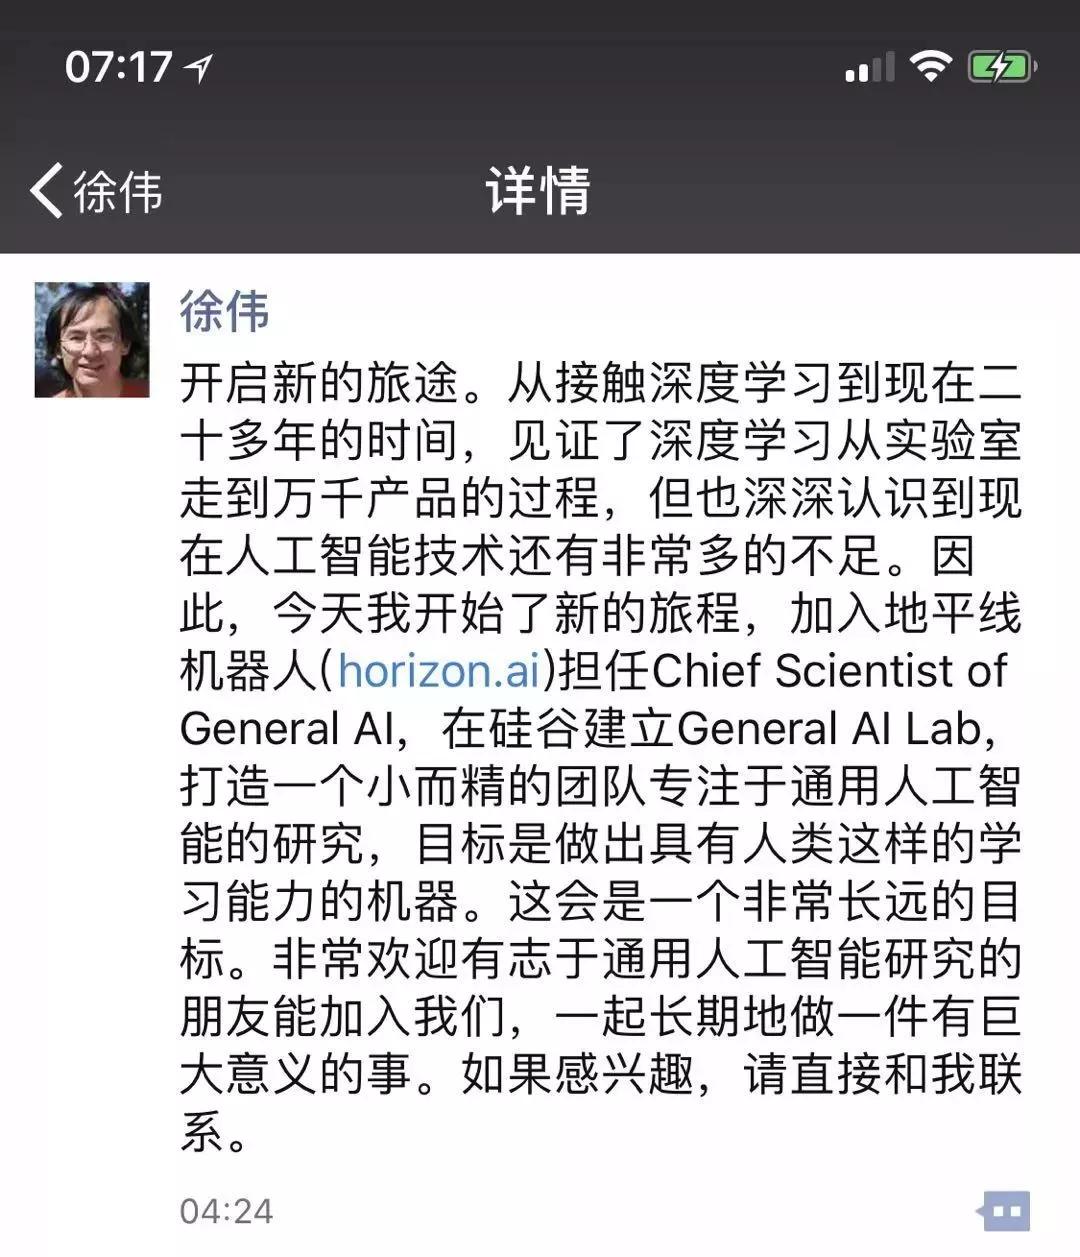 百度IDL杰出科学家徐伟宣布离职，加盟地平线投奔余凯